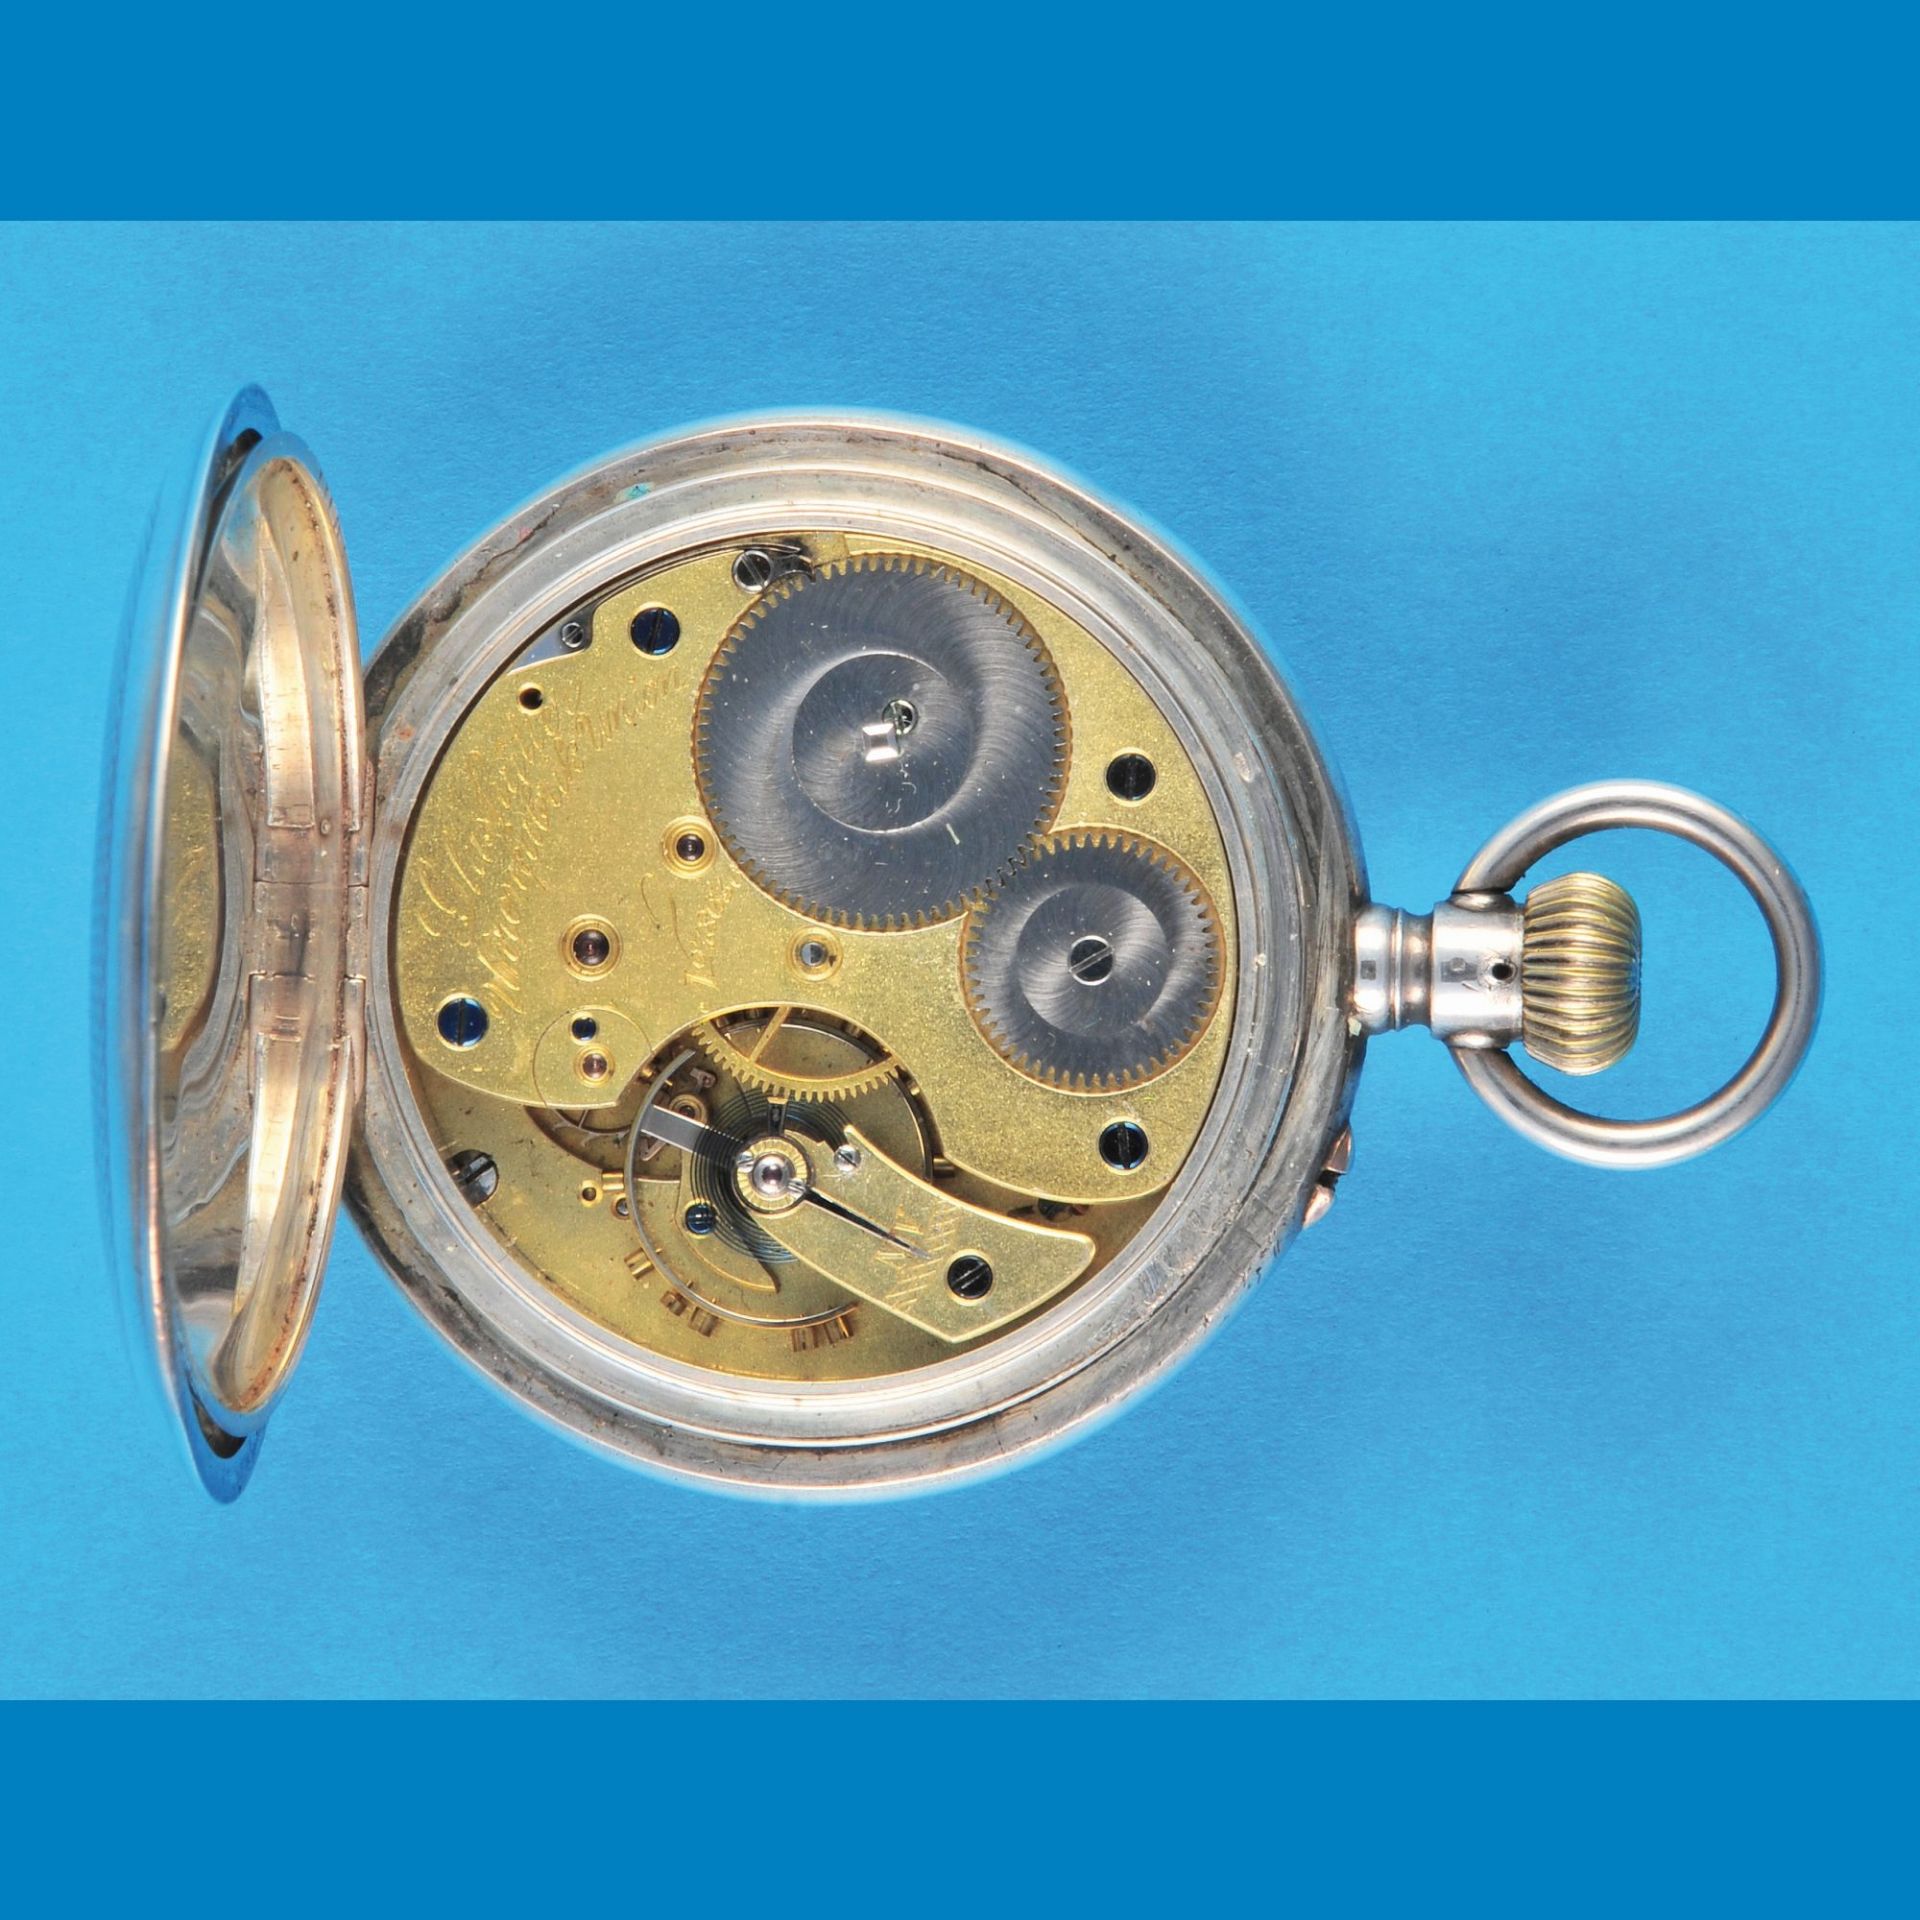 Große Silbertaschenuhr, Uhrenfabrik Union Glashütte in Sachsen, „Ankerchronometer“, guillochiertes